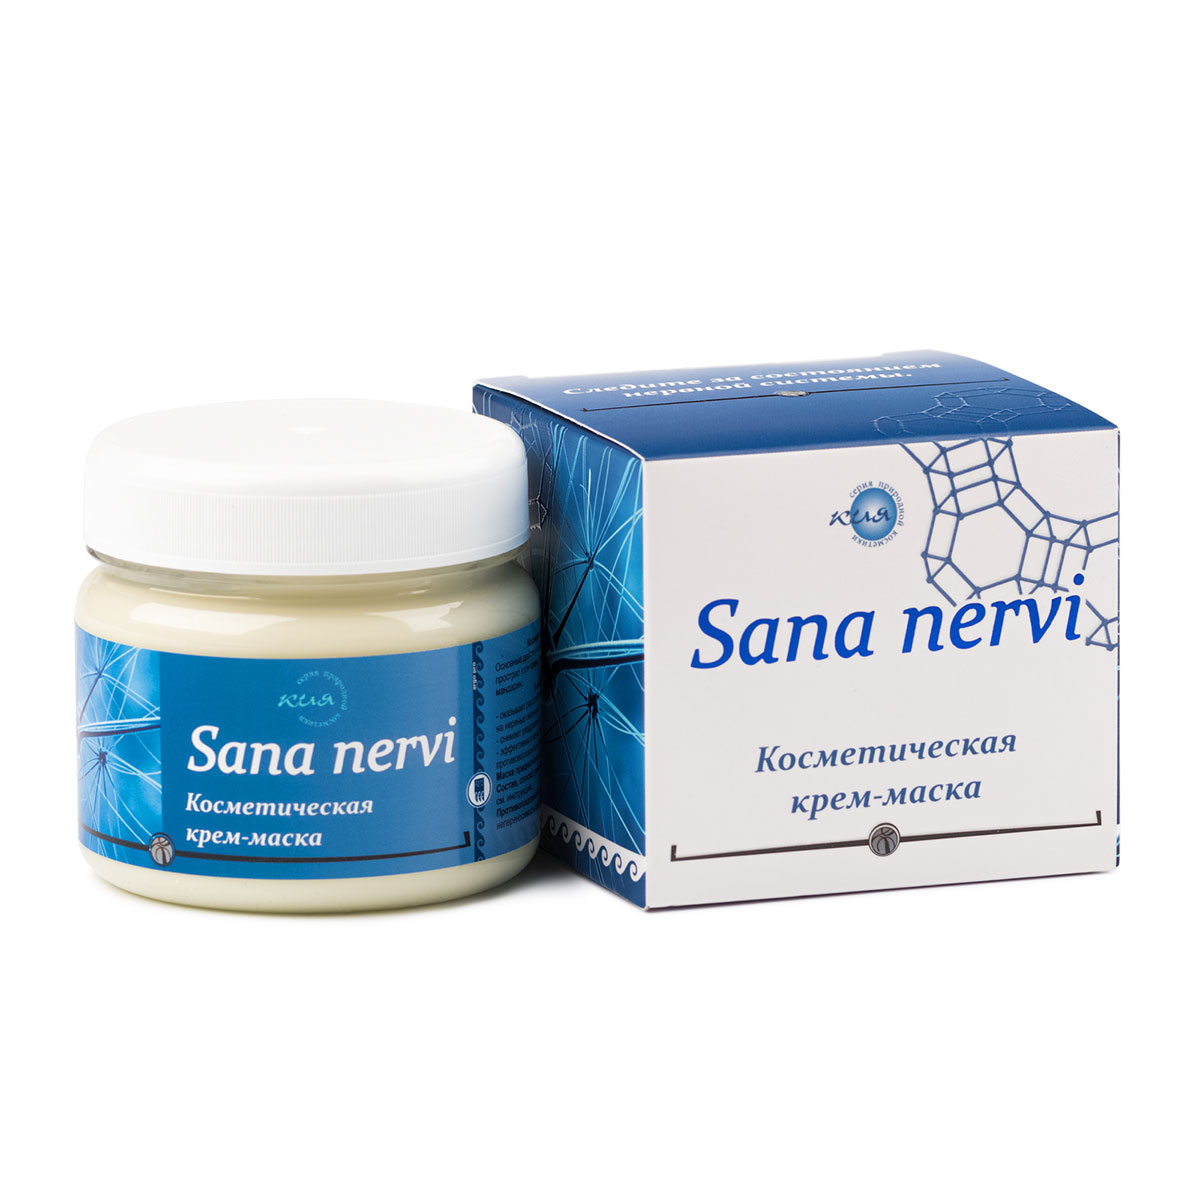 Косметическая крем-маска «Sana nervi»